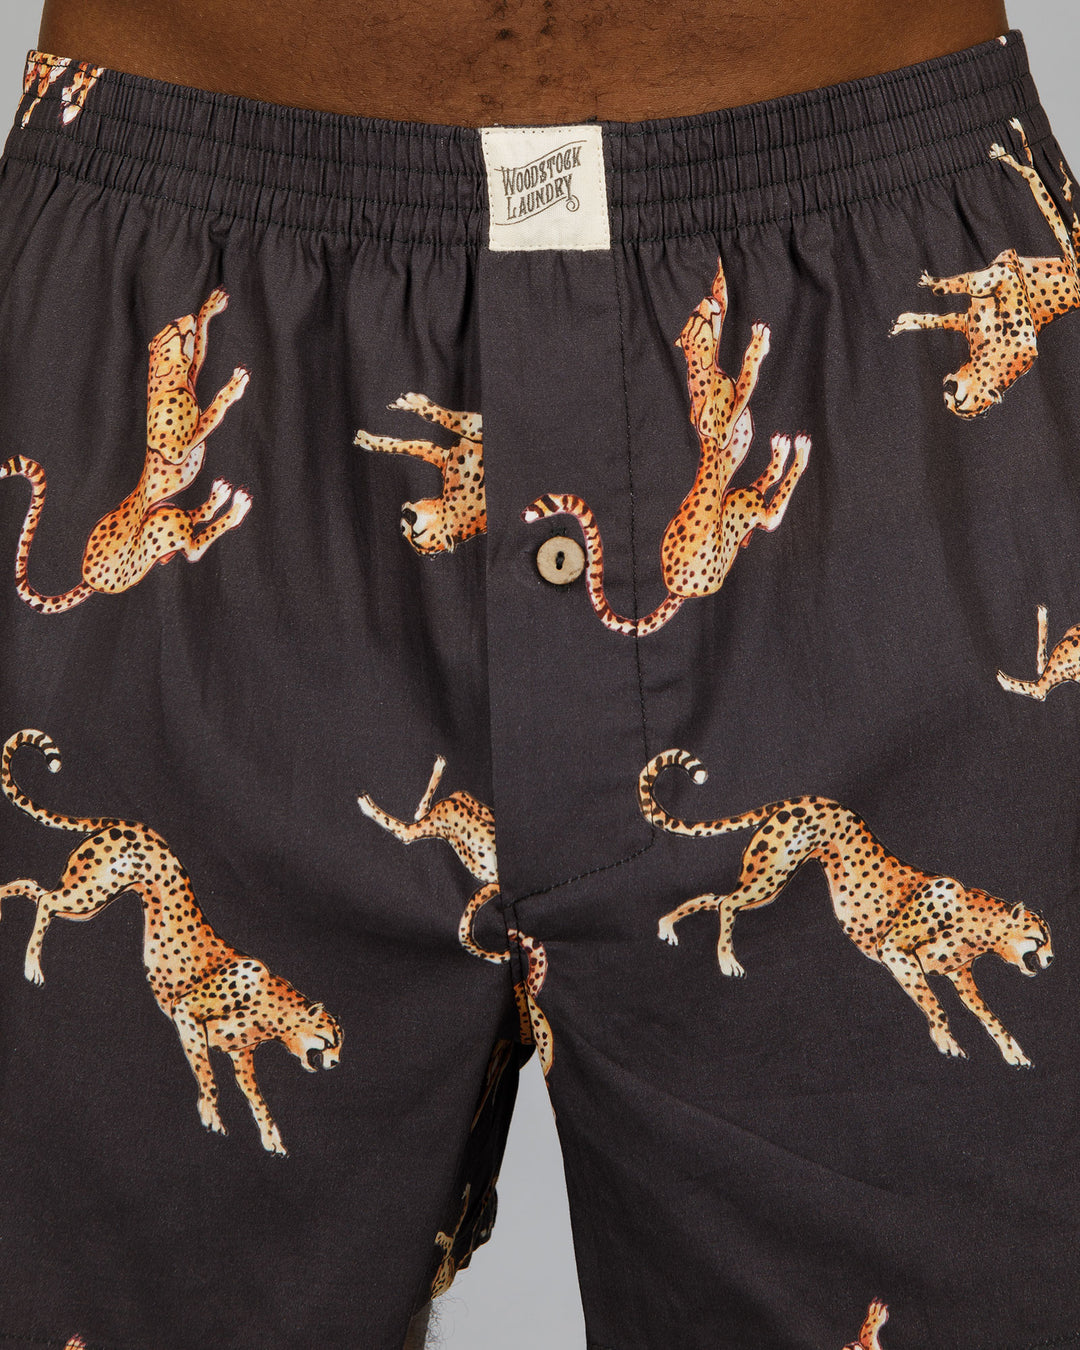 Mens Boxer Shorts Jumping Cheetahs Close - Woodstock Laundry